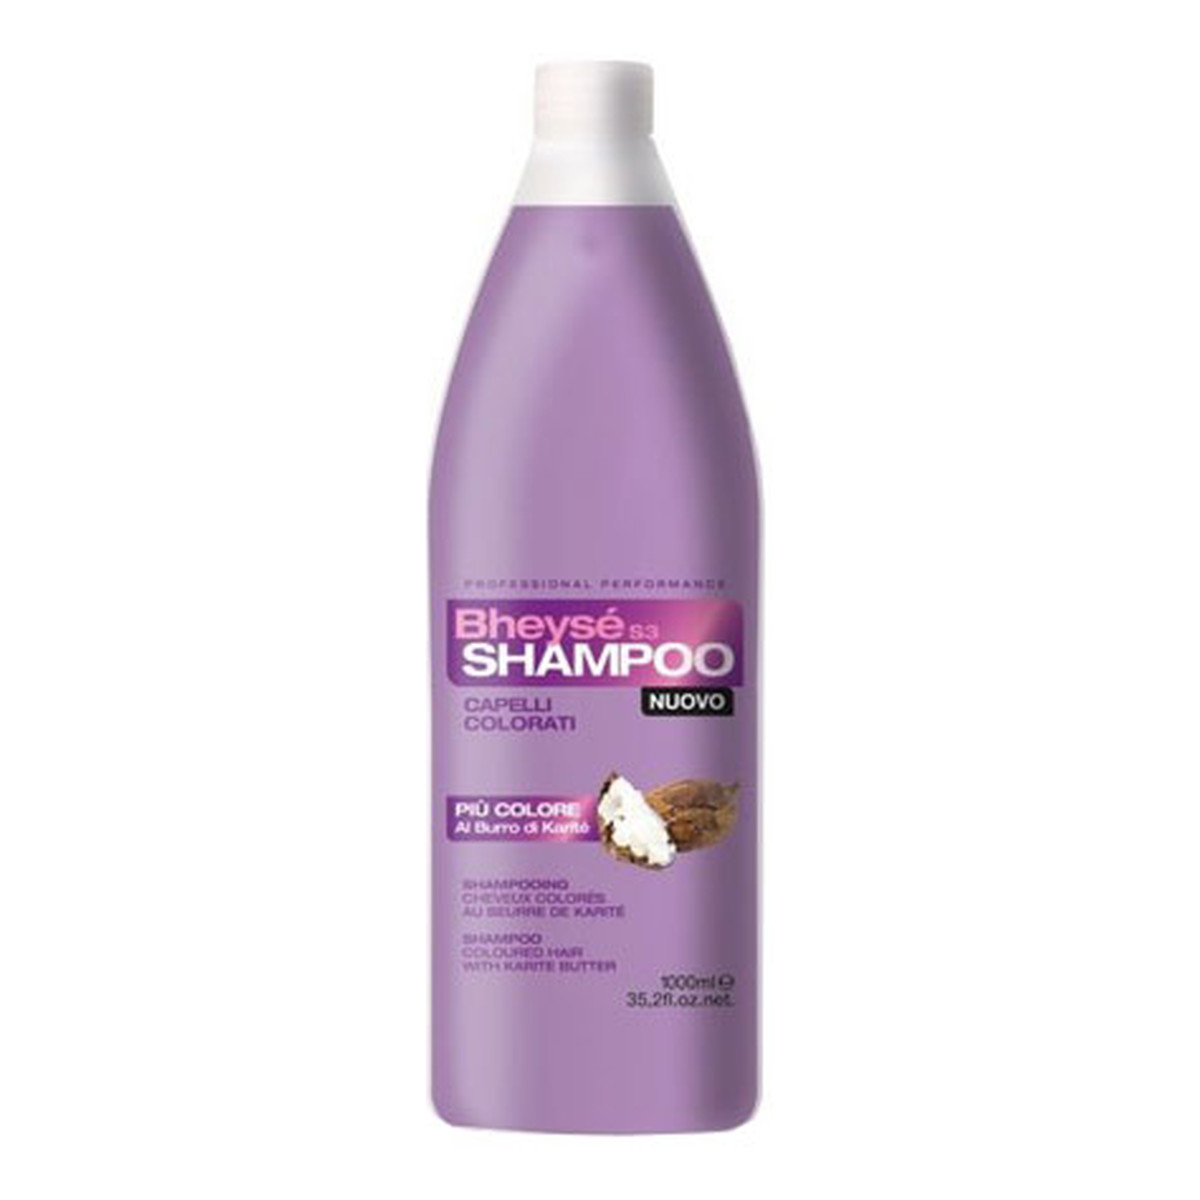 Renee Blanche Bheyse shampoo capelli colorati szampon do włosów farbowanych 1000ml